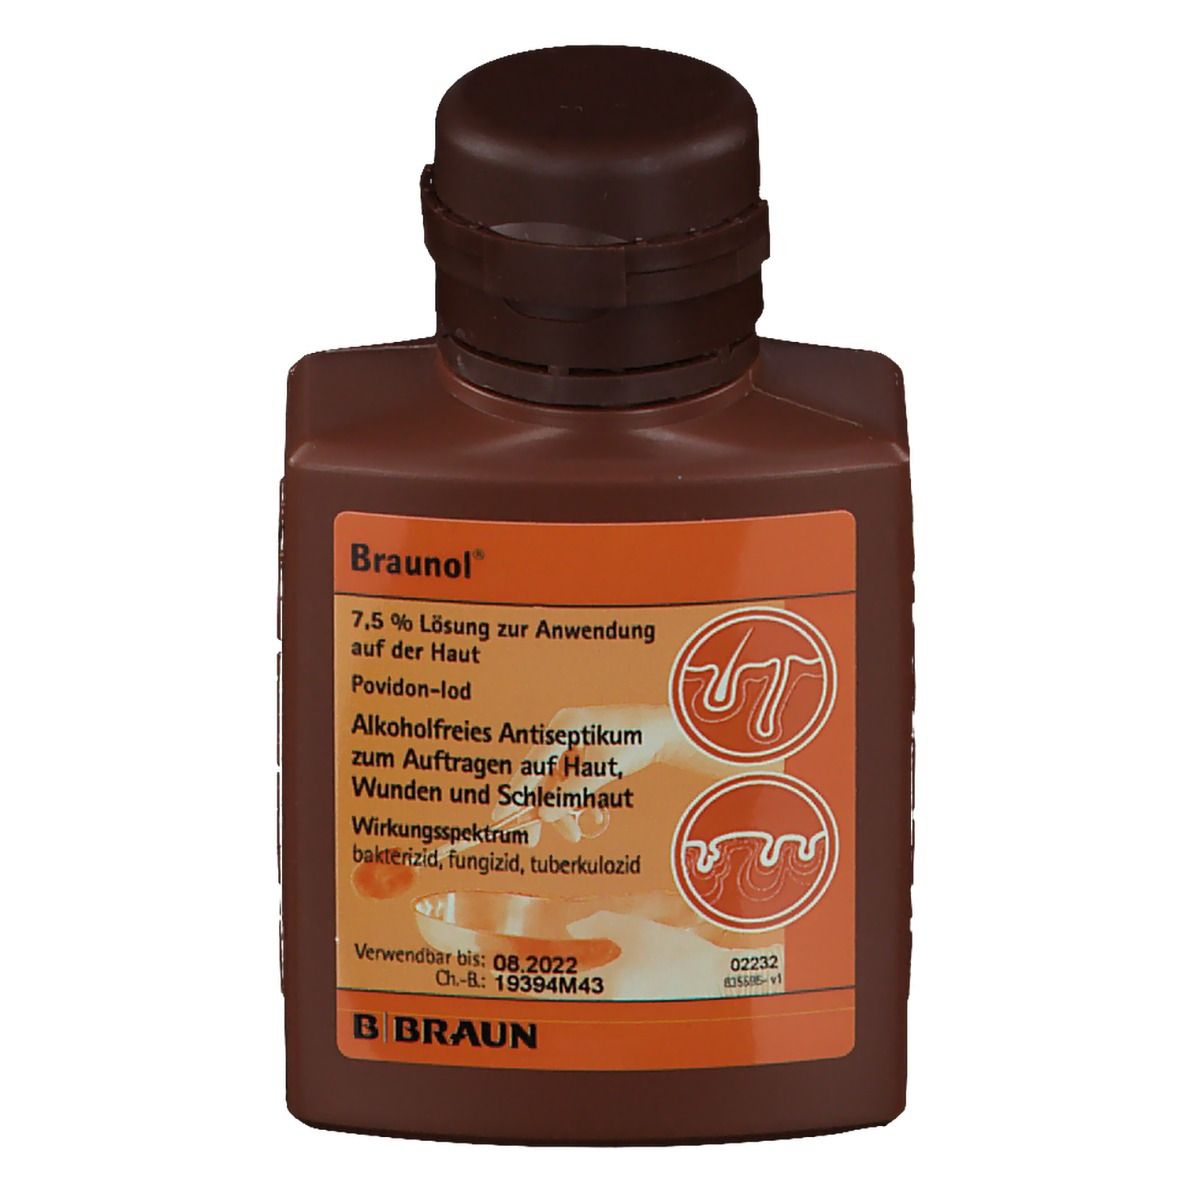 Braunol® Haut- und Schleimhautantiseptik